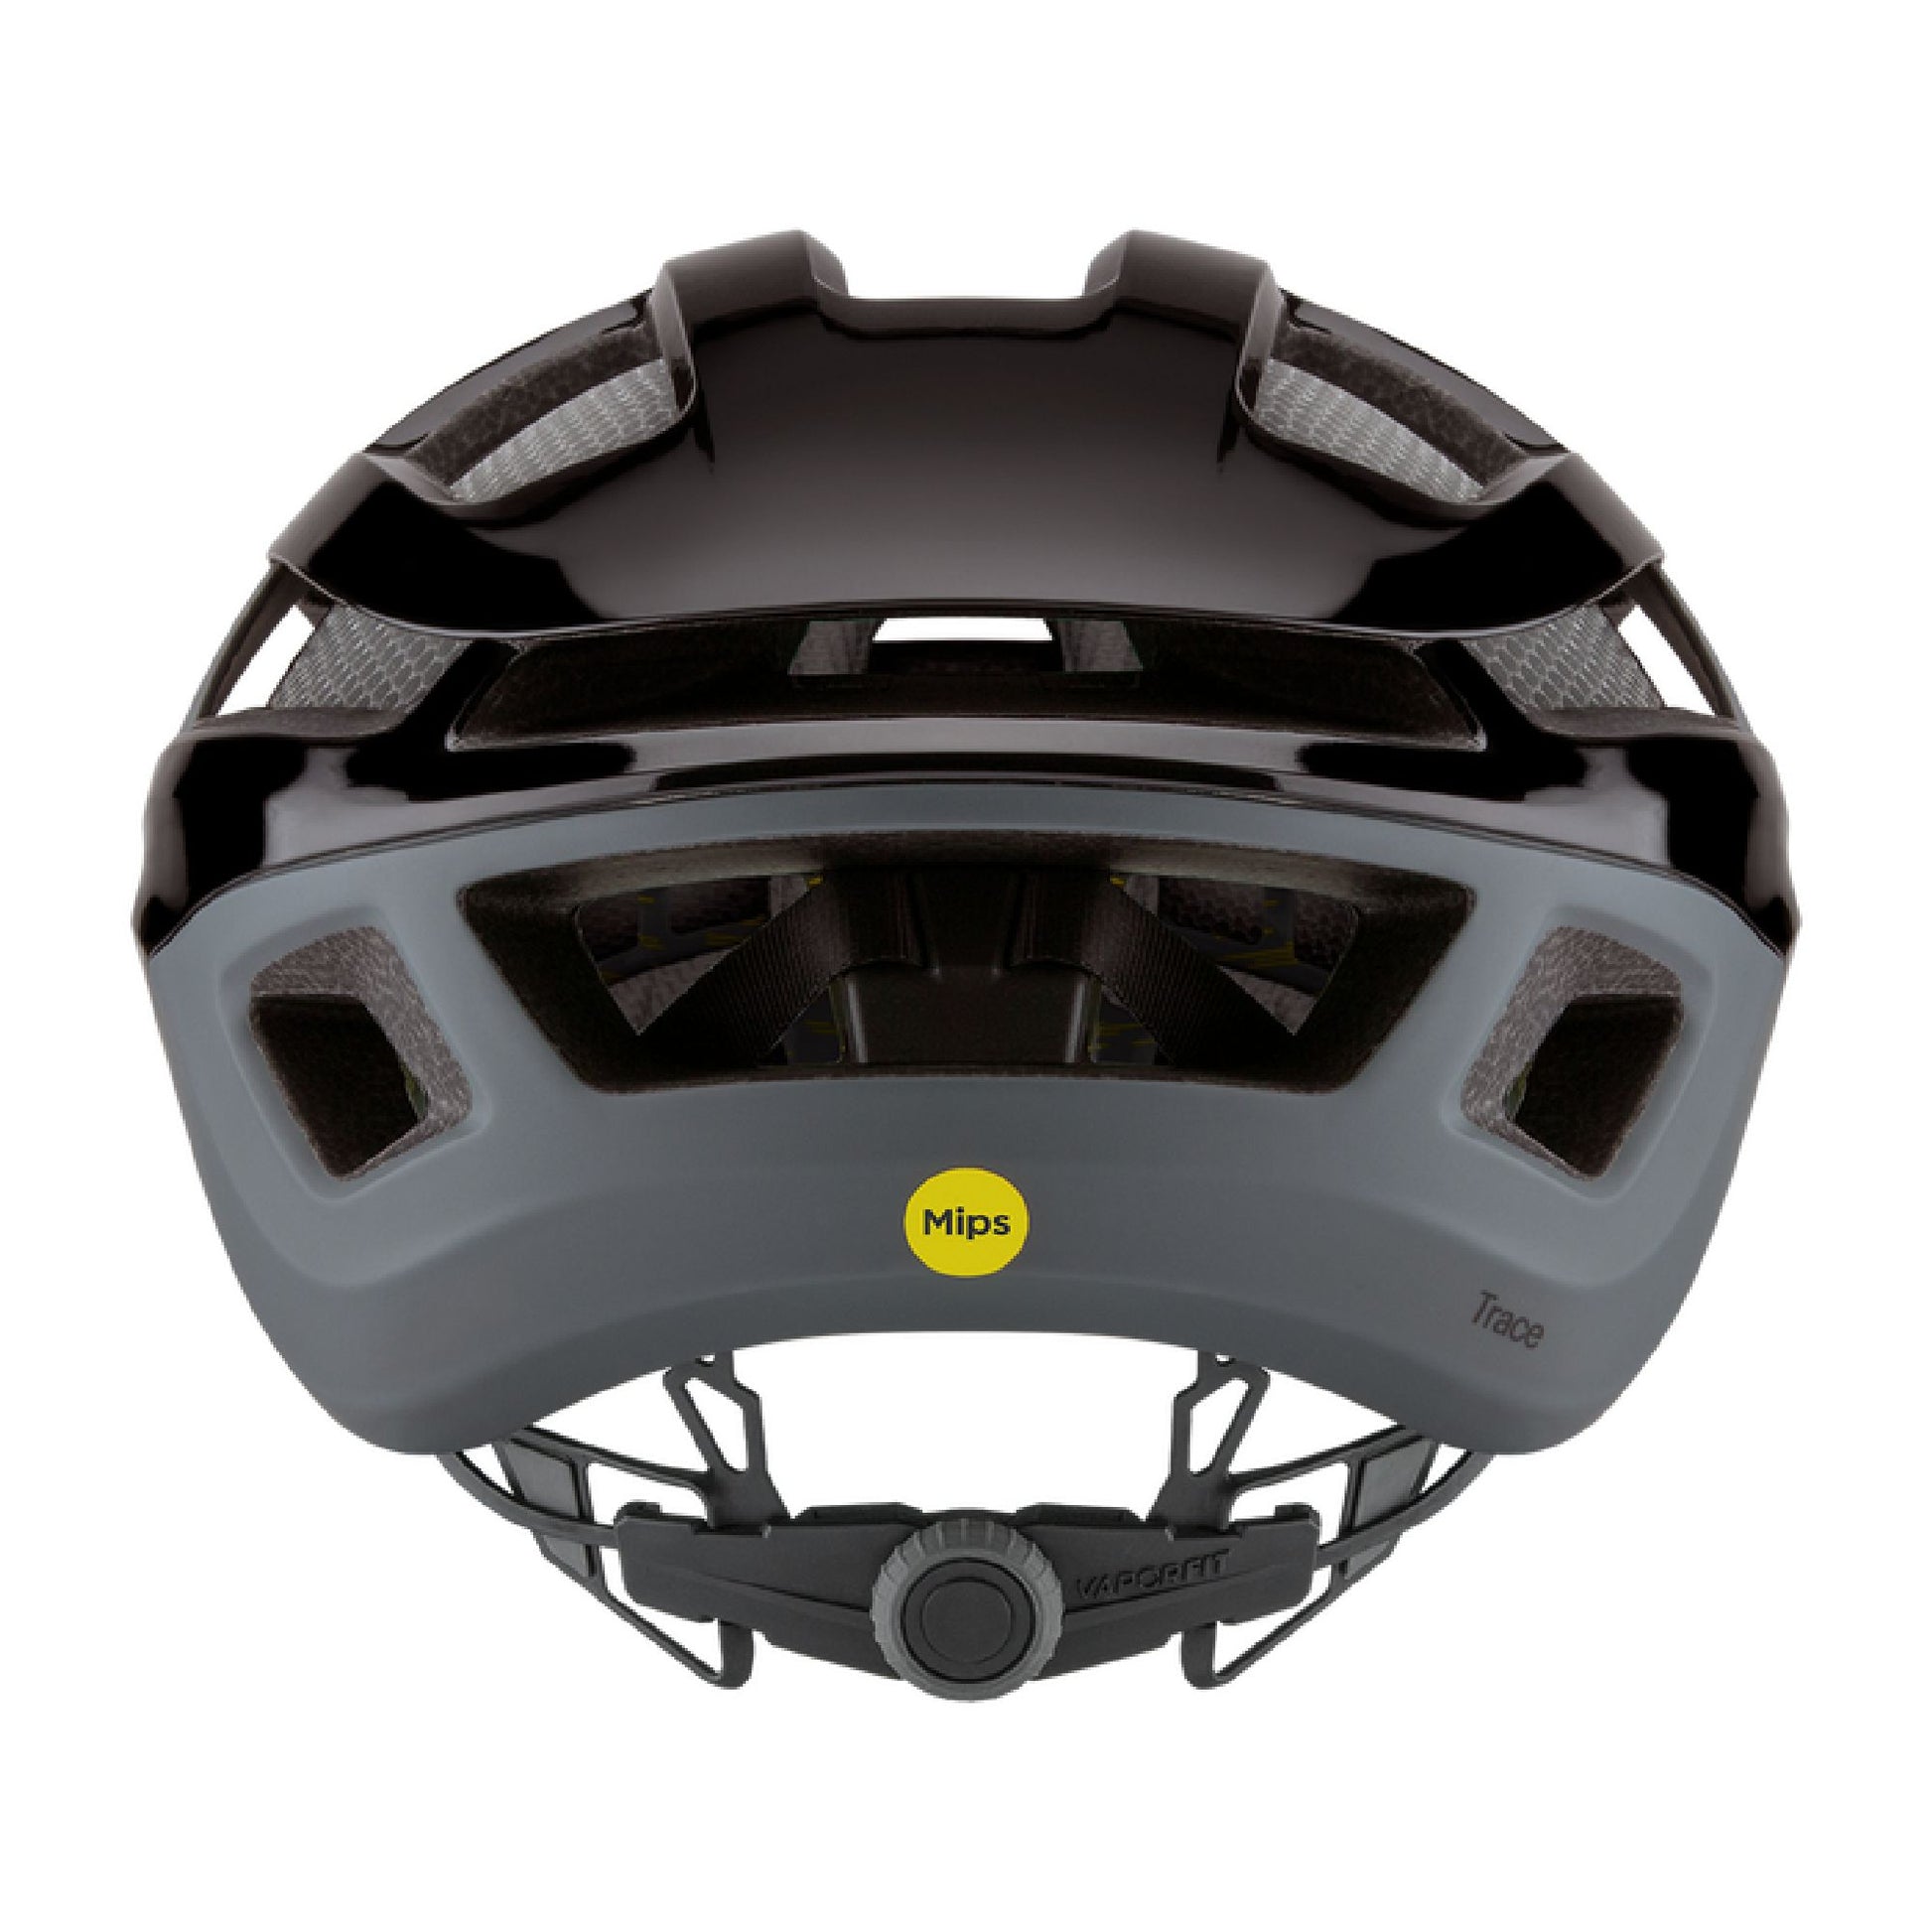 Smith Trace MIPS Helmet Black Matte Cement Bike Helmets